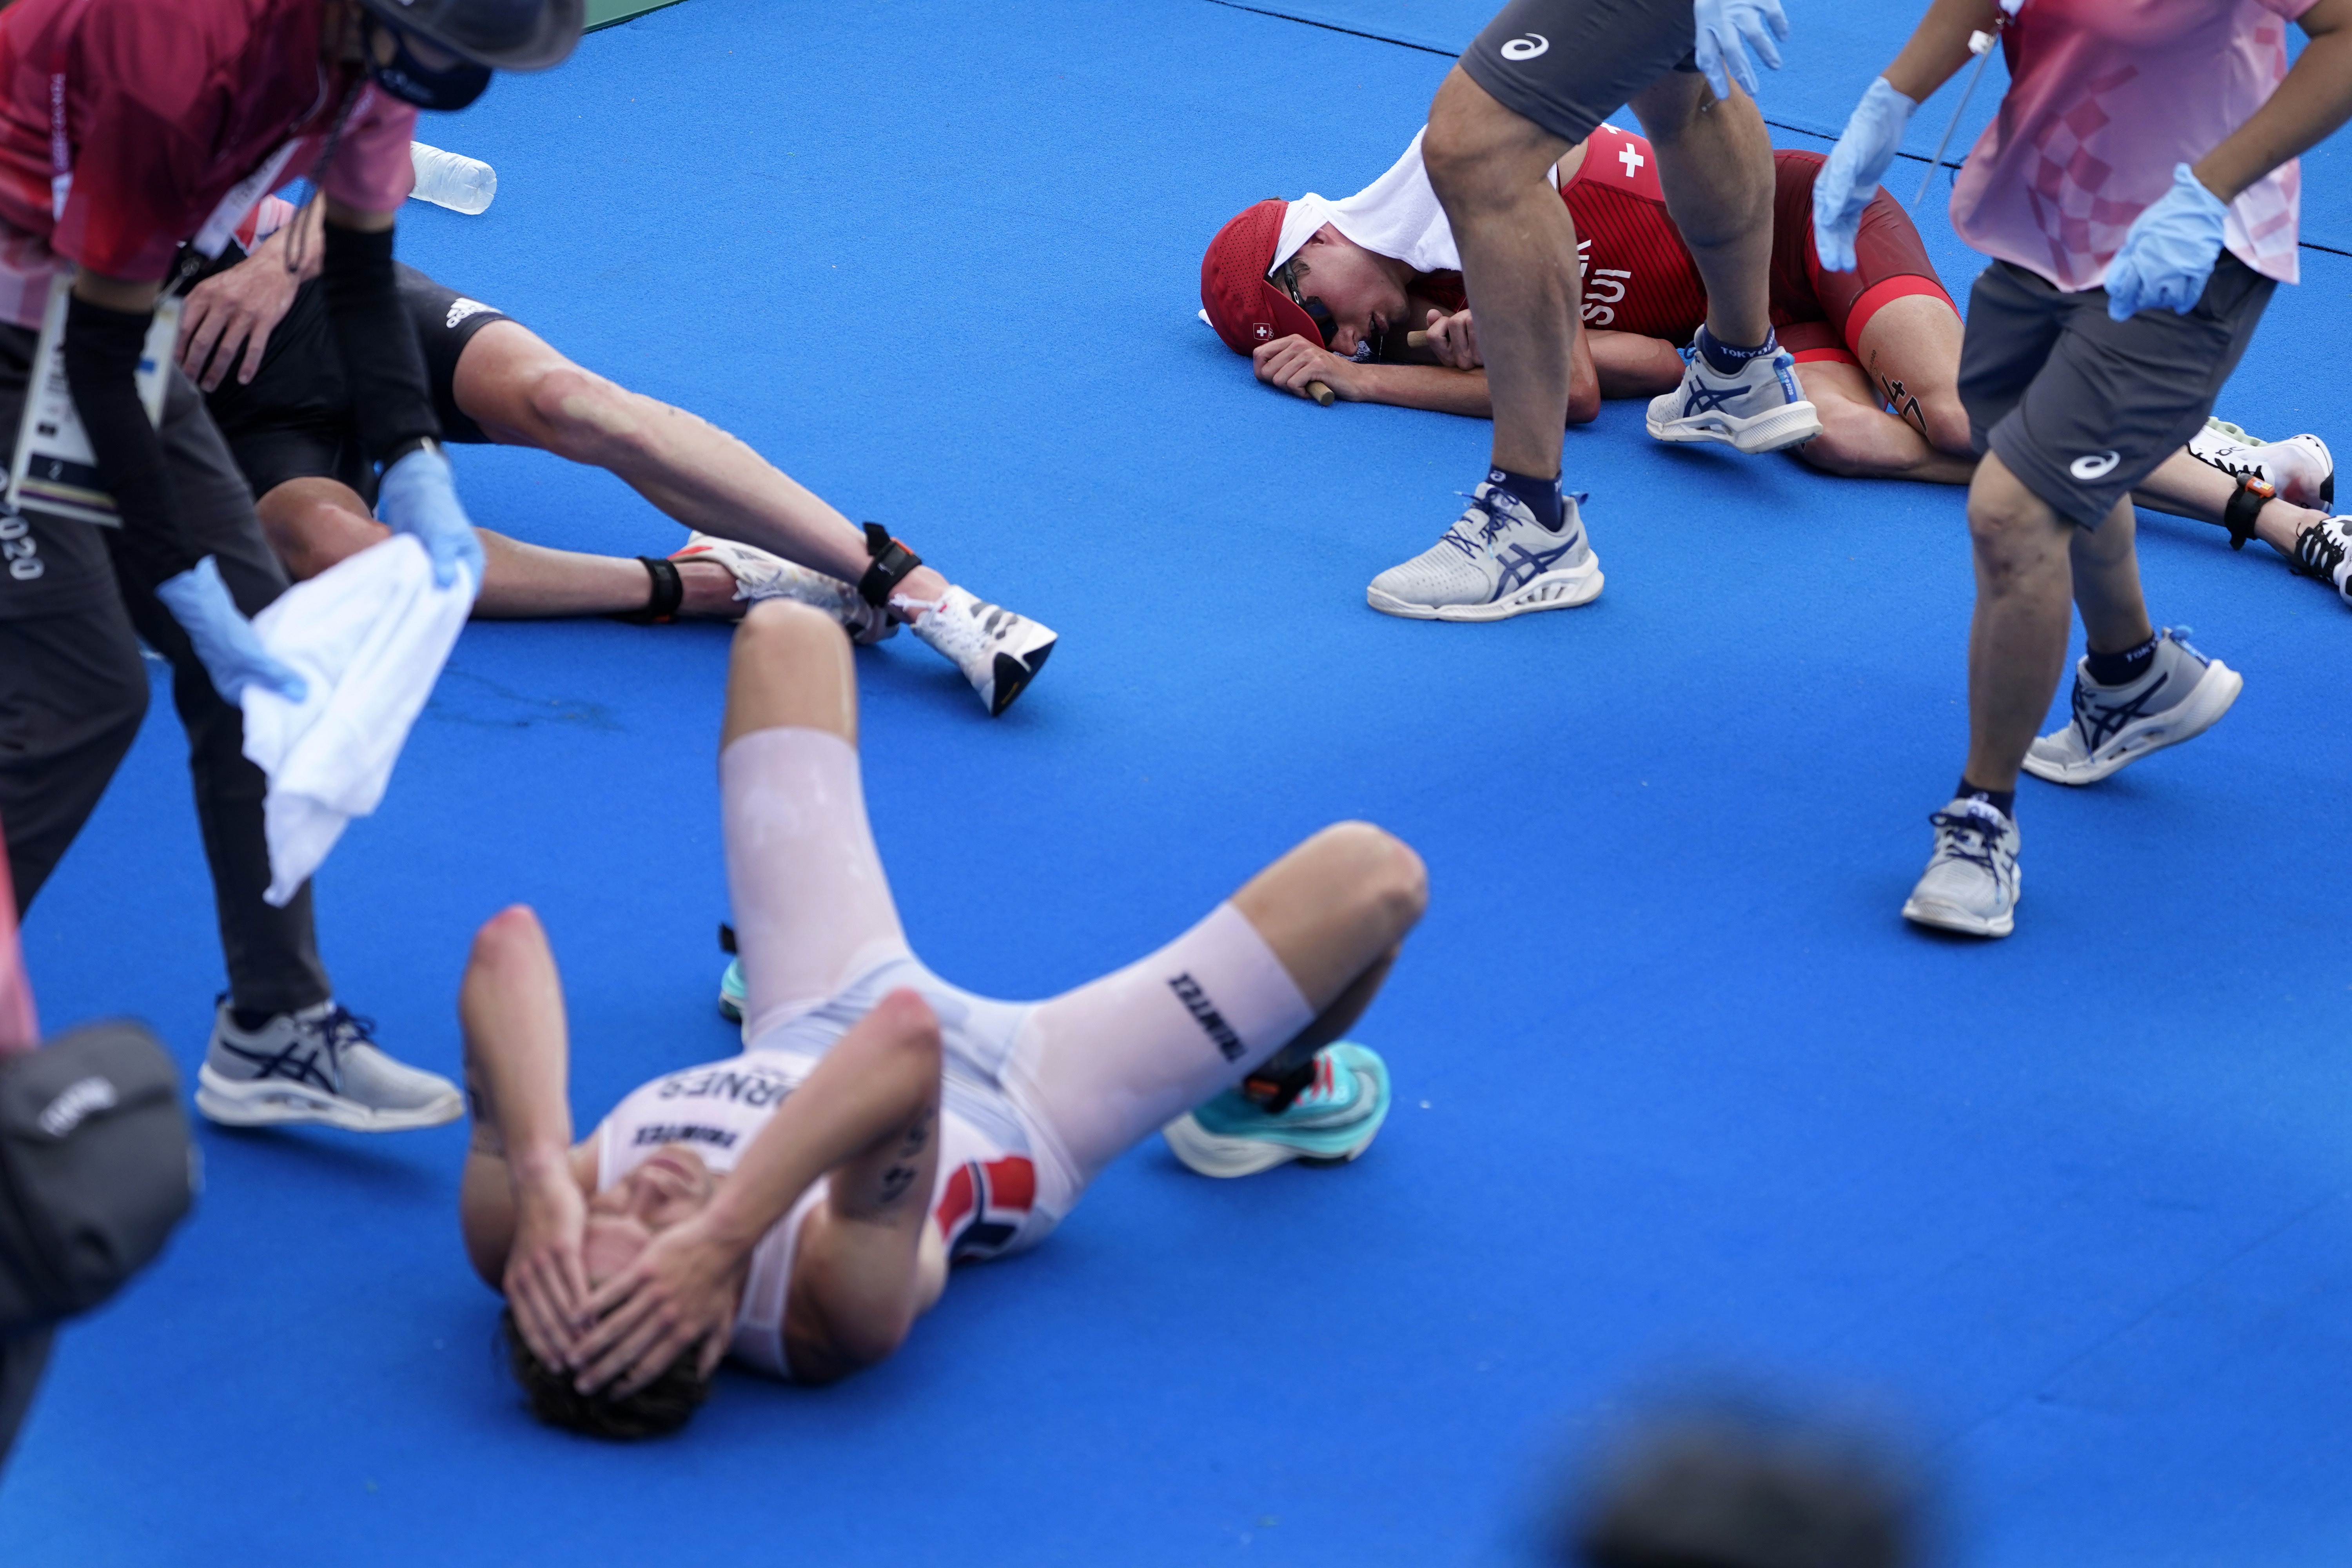 일부 선수들은 결승선 지나자마자 몸을 가누지 못해 머리를 부여 잡은 채 쓰러졌다.